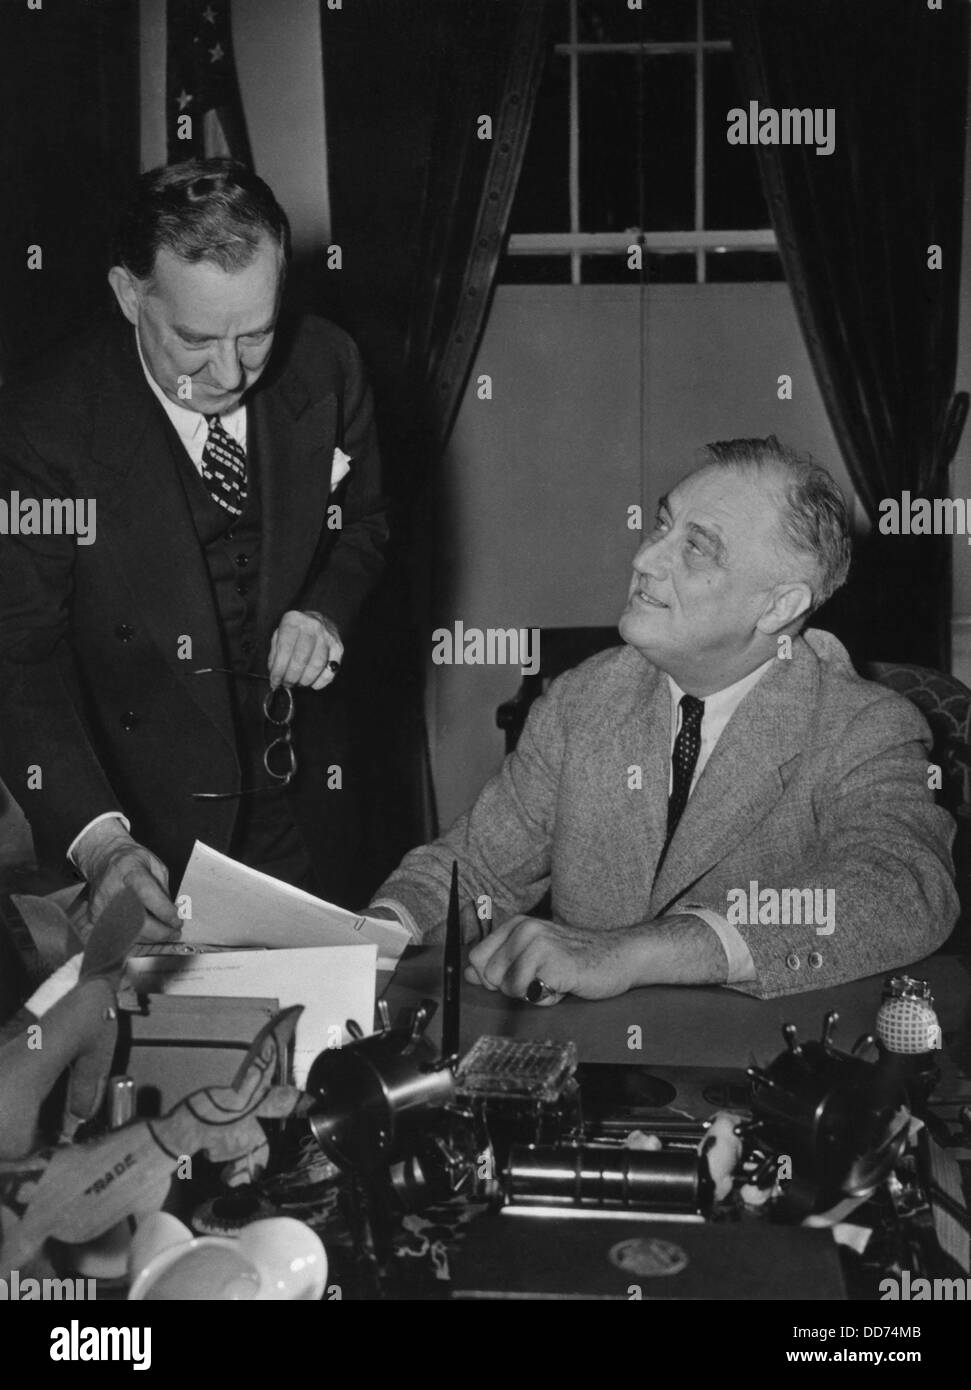 Le président Franklin Roosevelt et appuyez sur s. Stephen tôt. Le 18 janvier 1941. Début servi comme l'un des trois secrétaires de la Maison Blanche, Banque D'Images